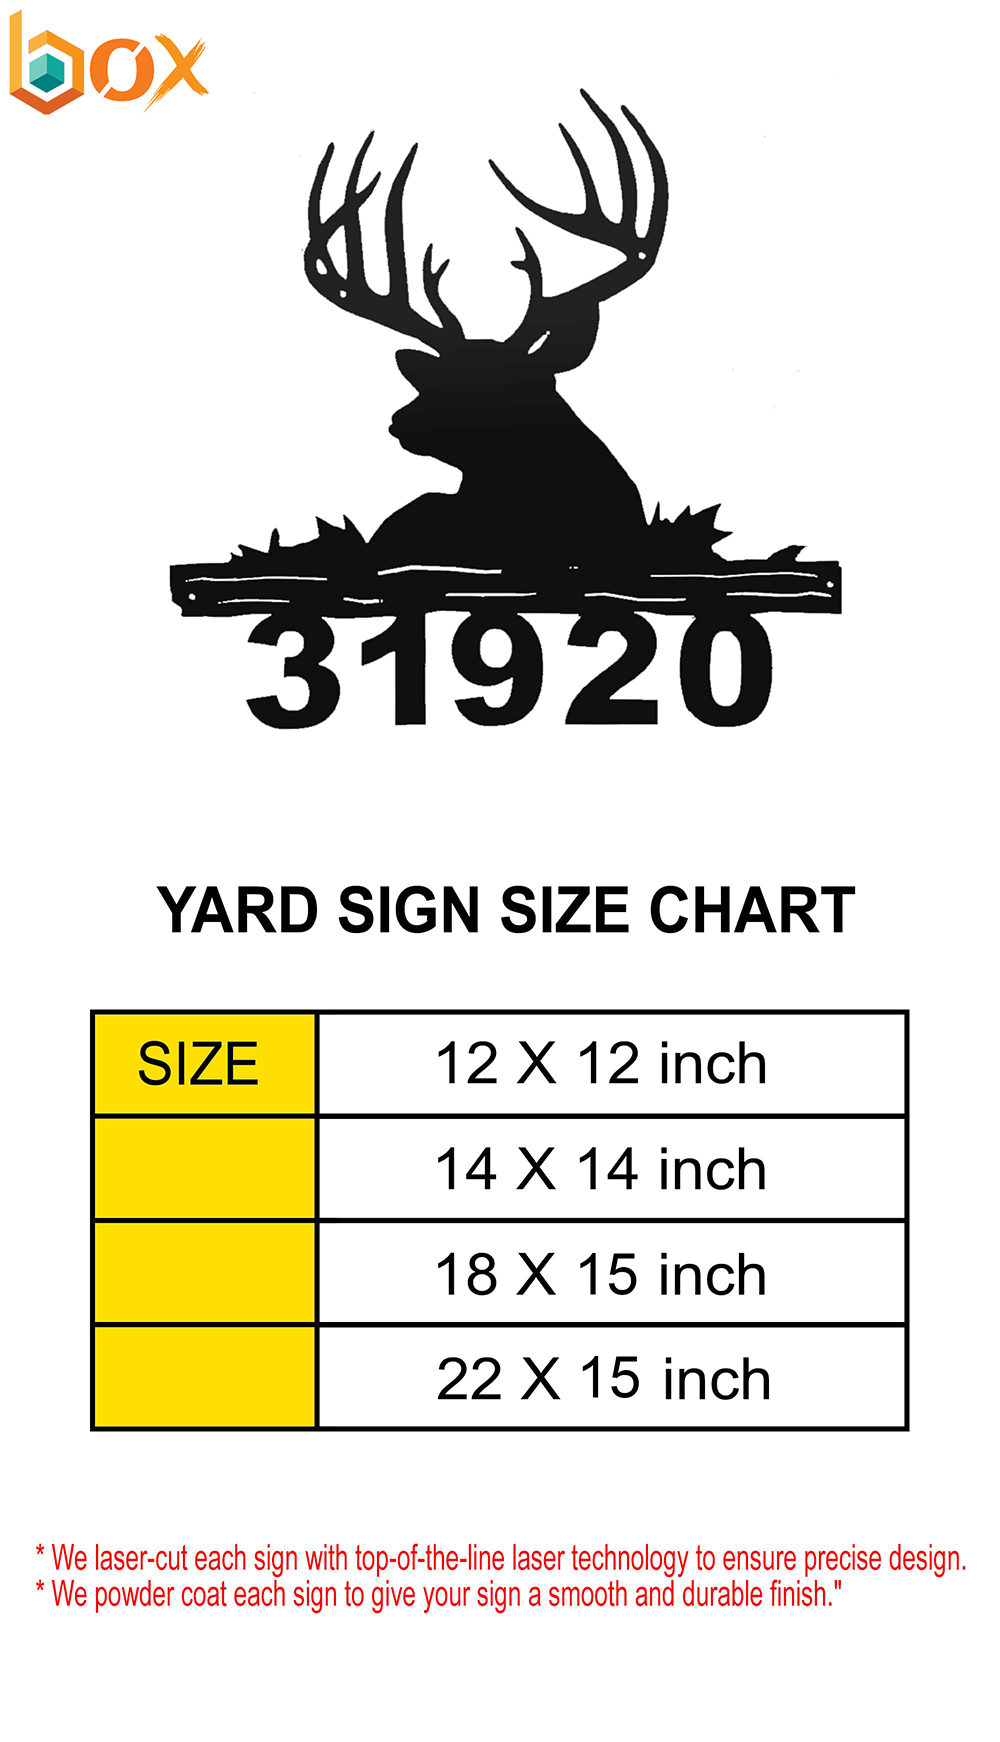 Yard Sign Size Chart: